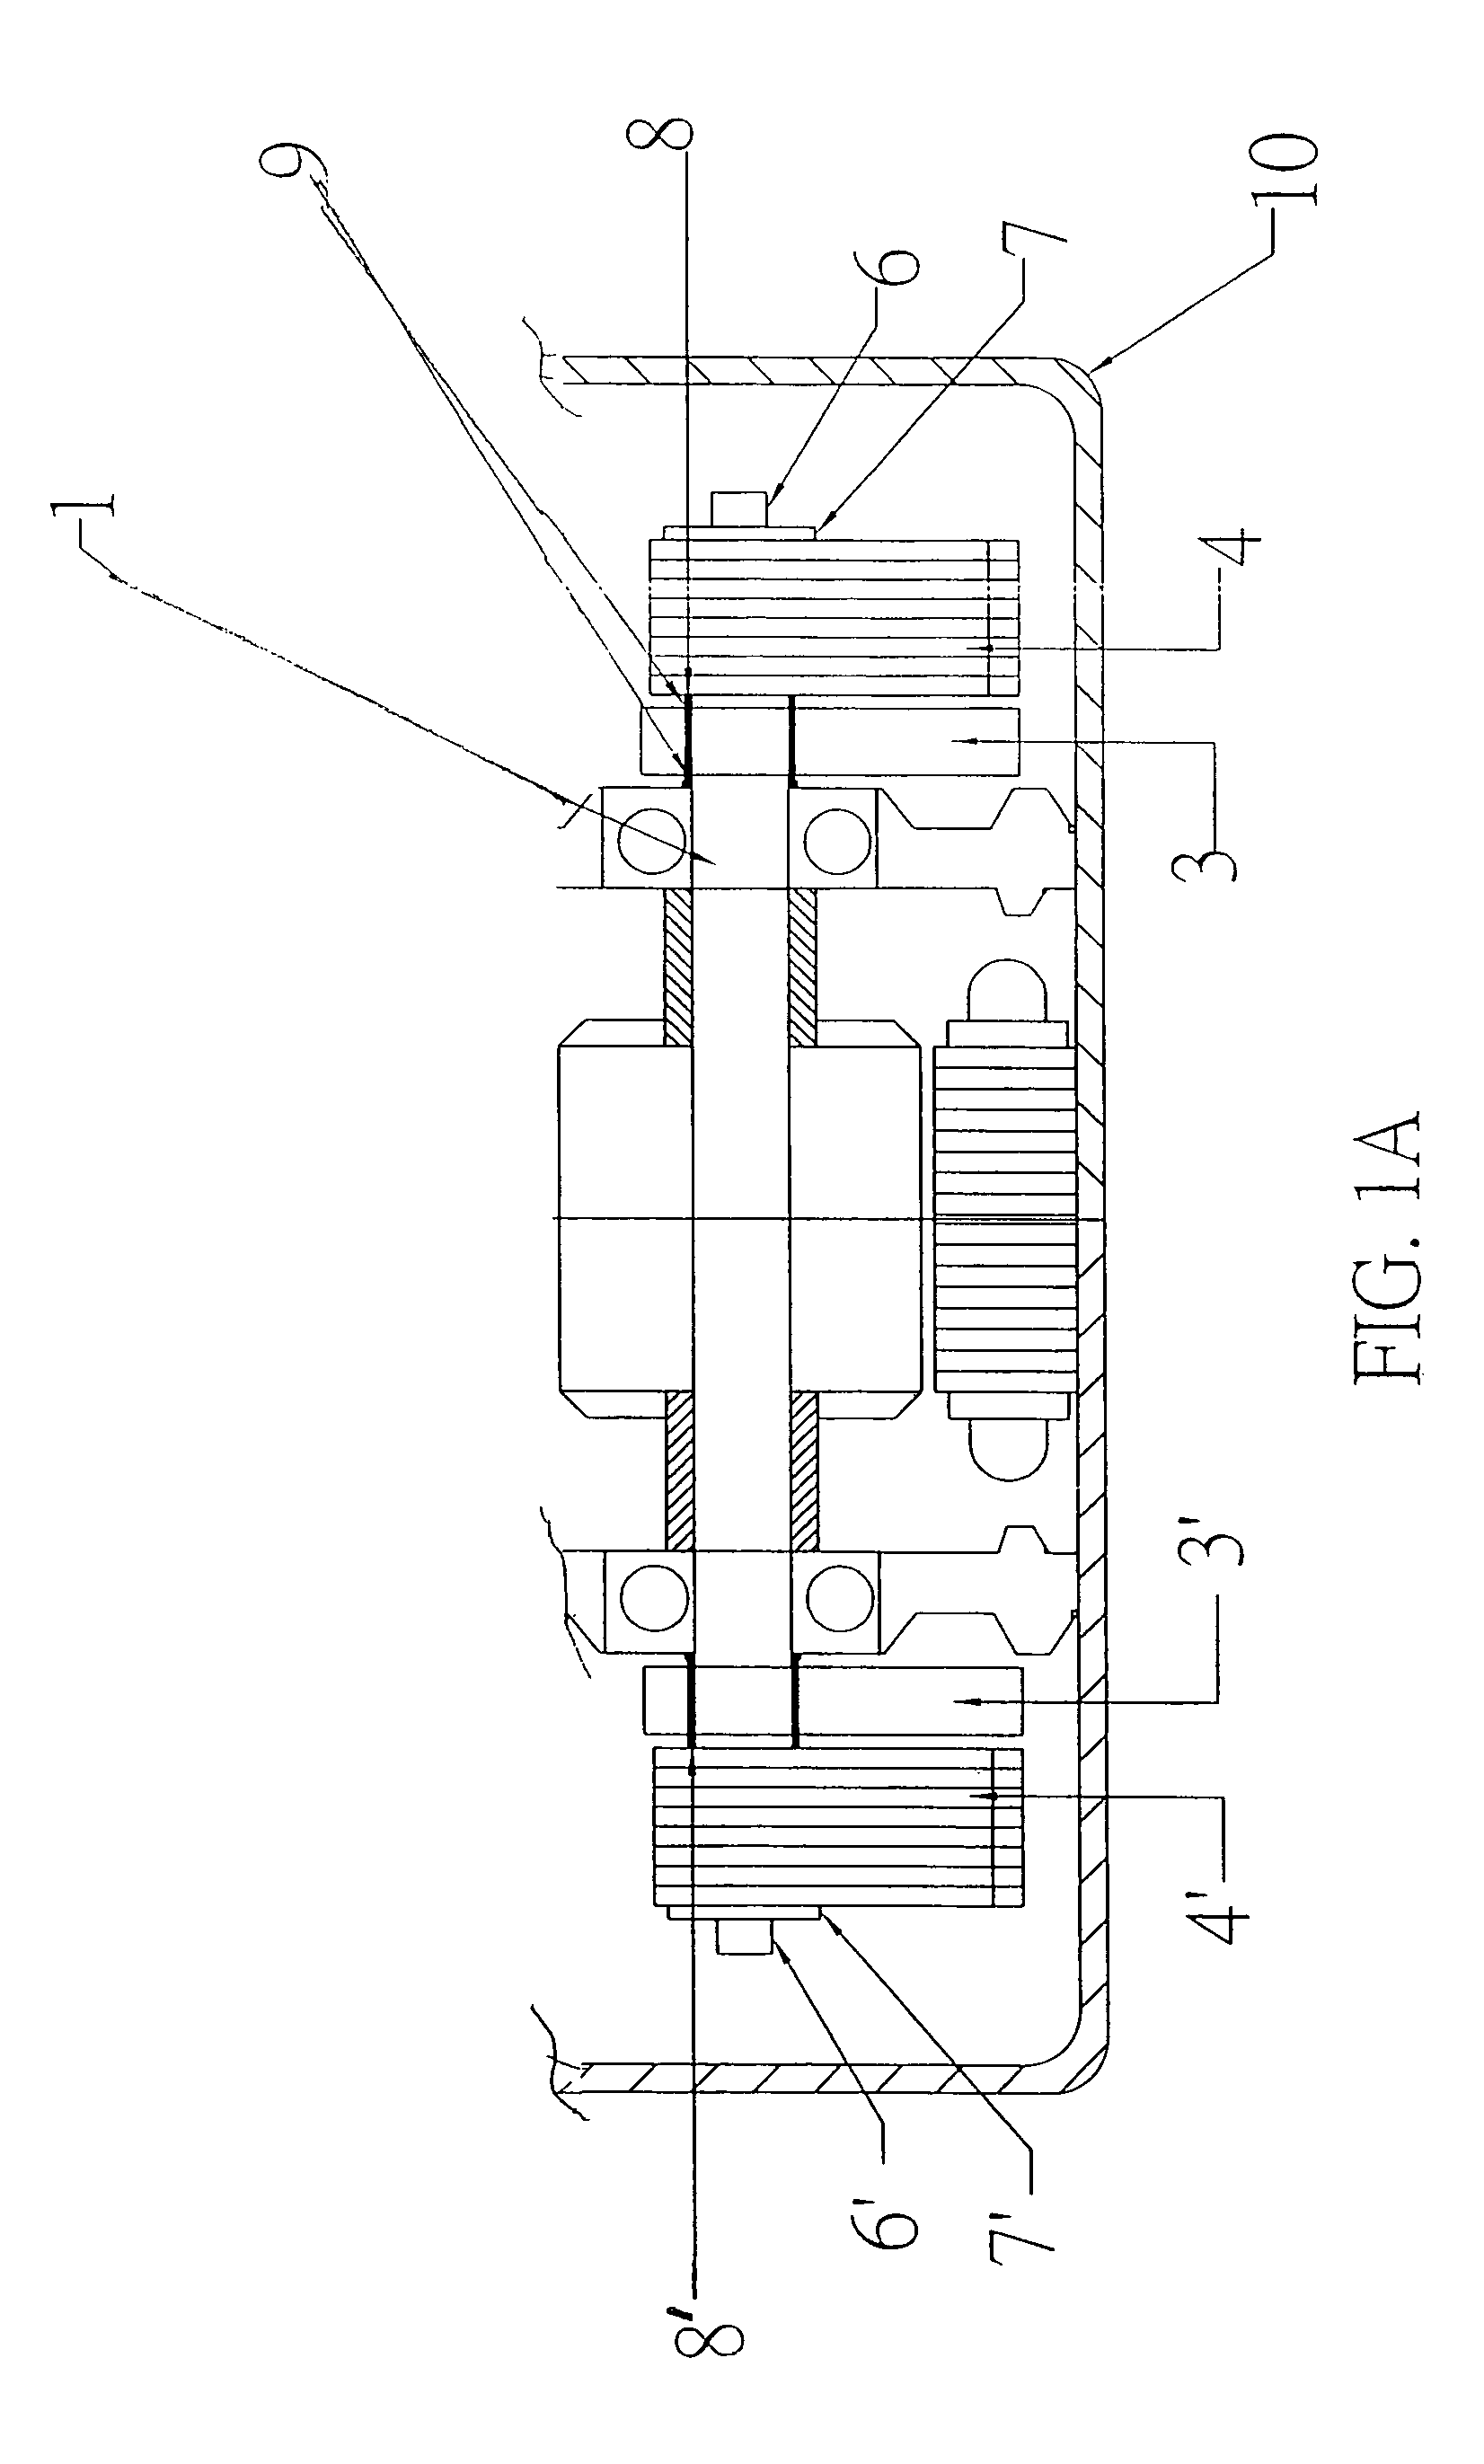 Three-phase induction motor